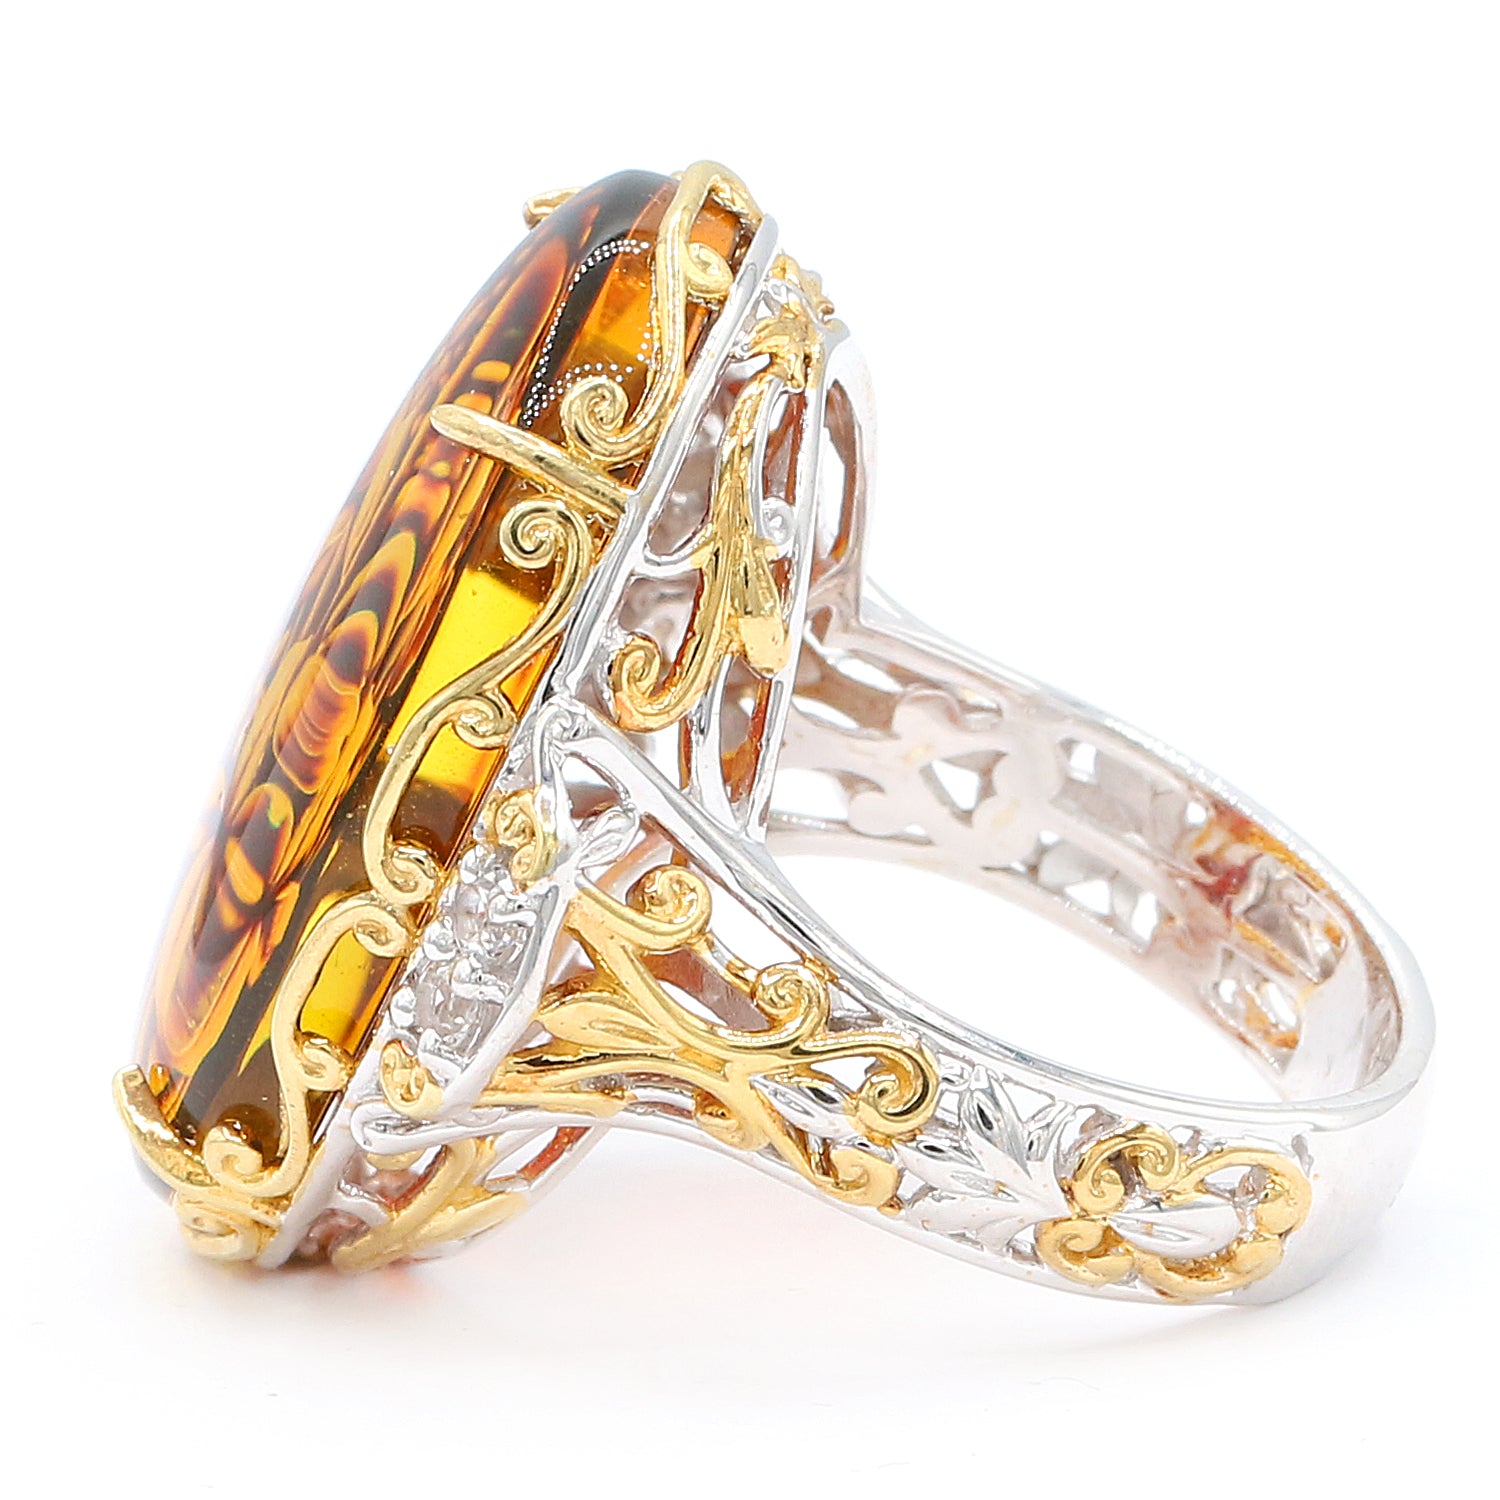 Gems en Vogue Oval Carved Amber & White Topaz Flower Boutique Ring